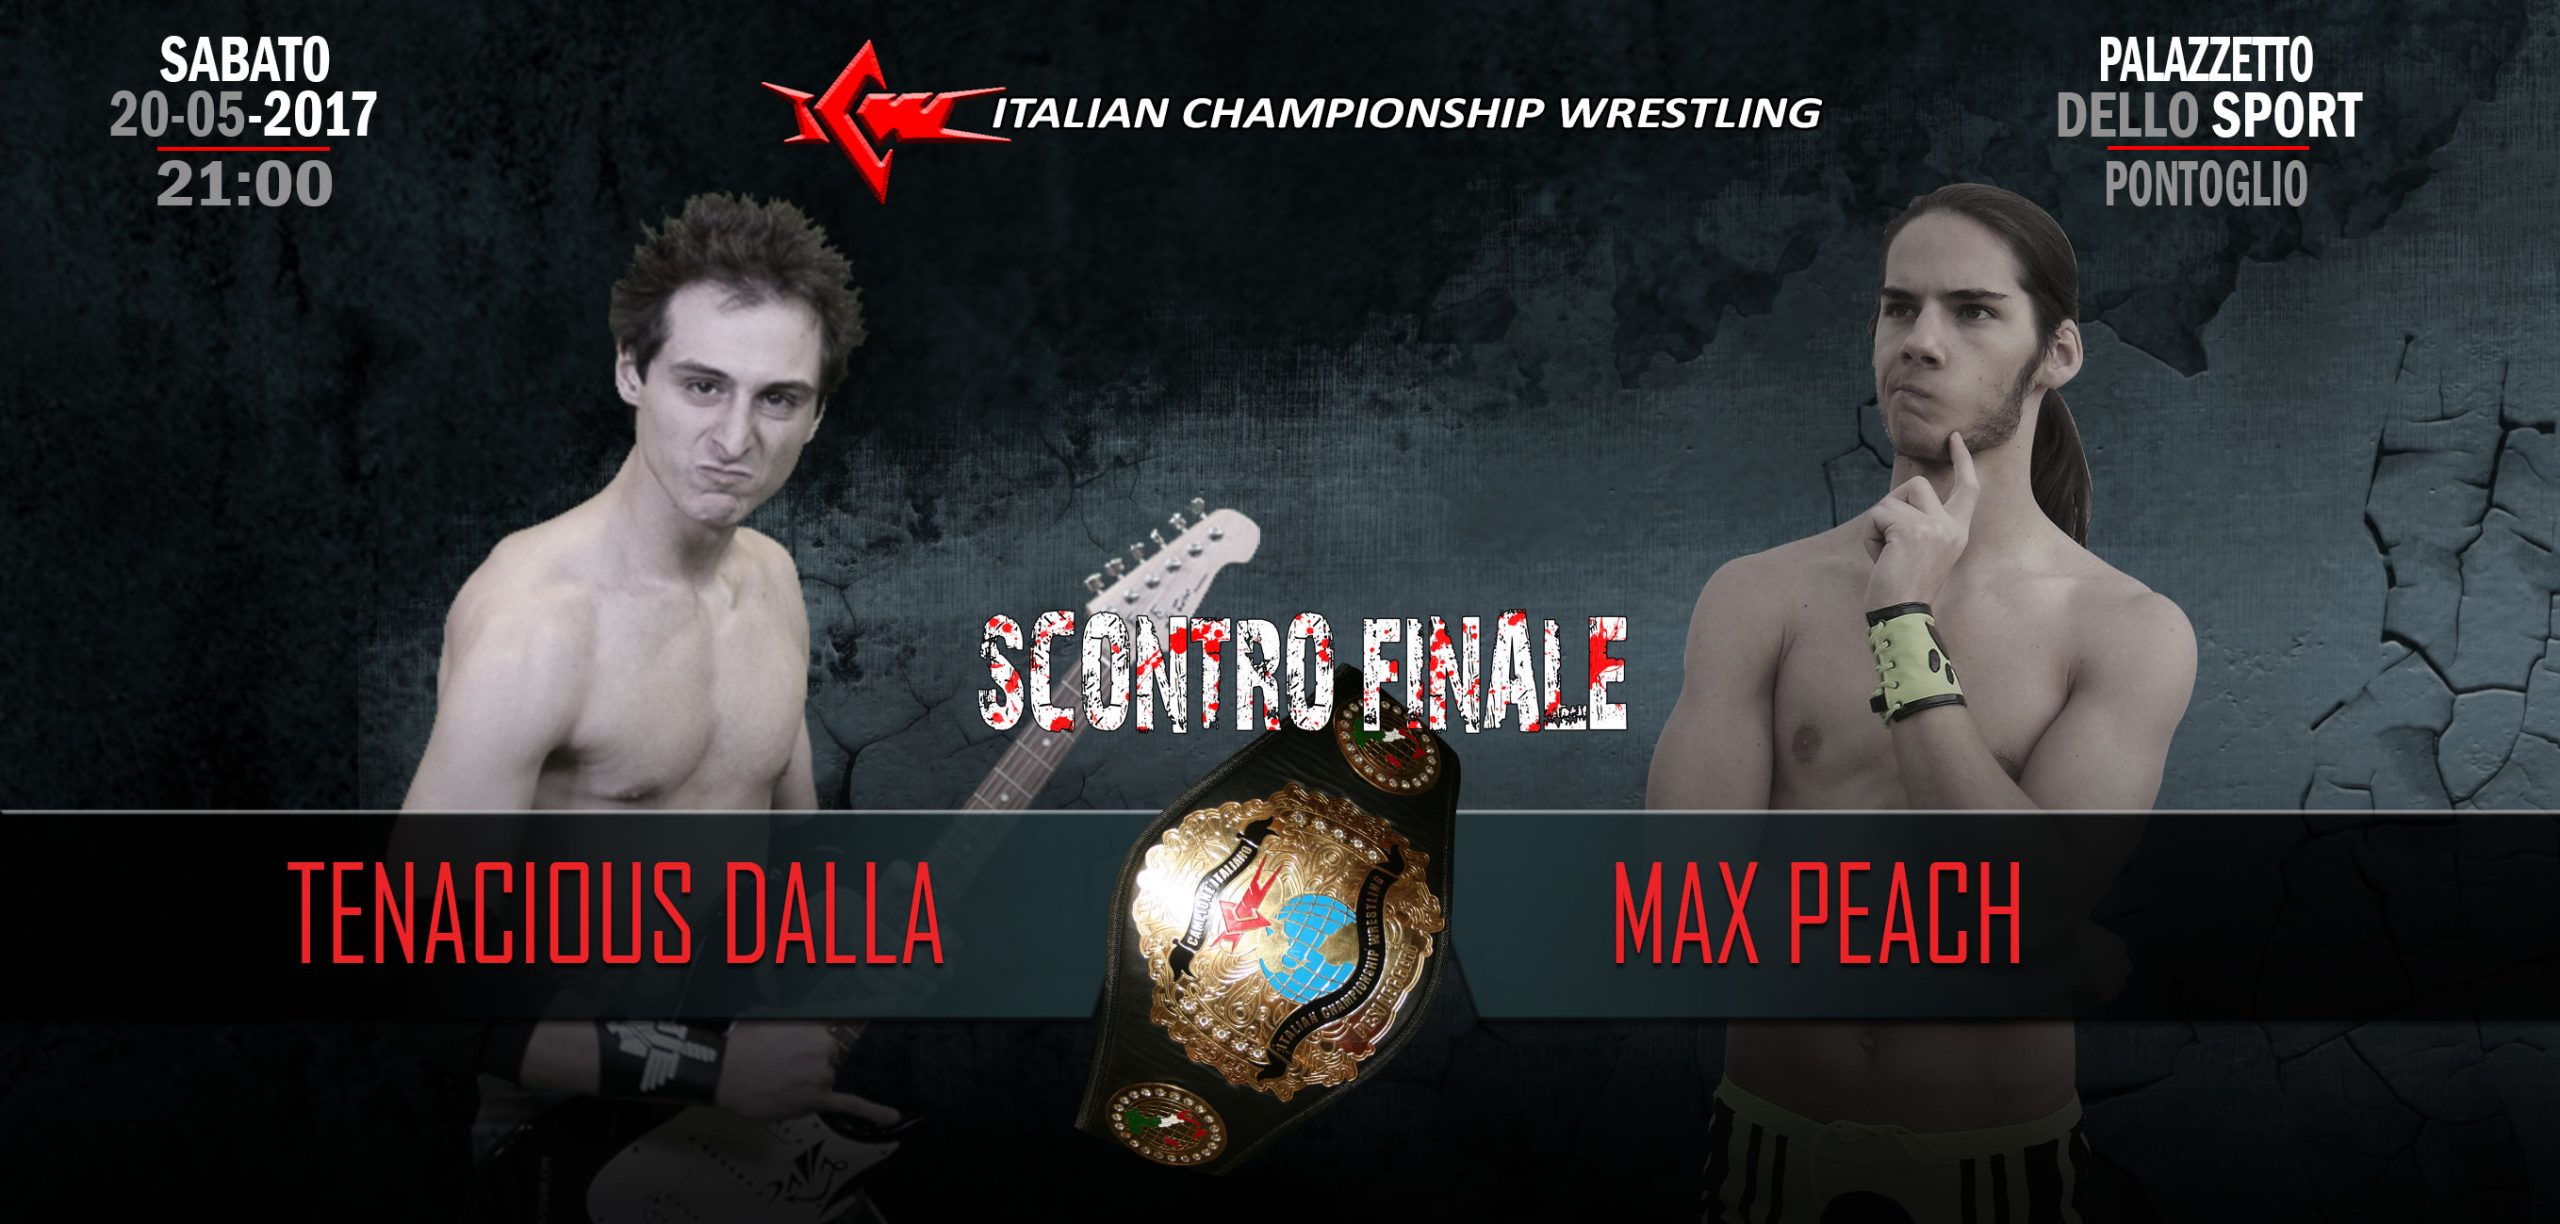 [VIDEO] Max Peach vs Tenacious Dalla: lo Scontro Finale